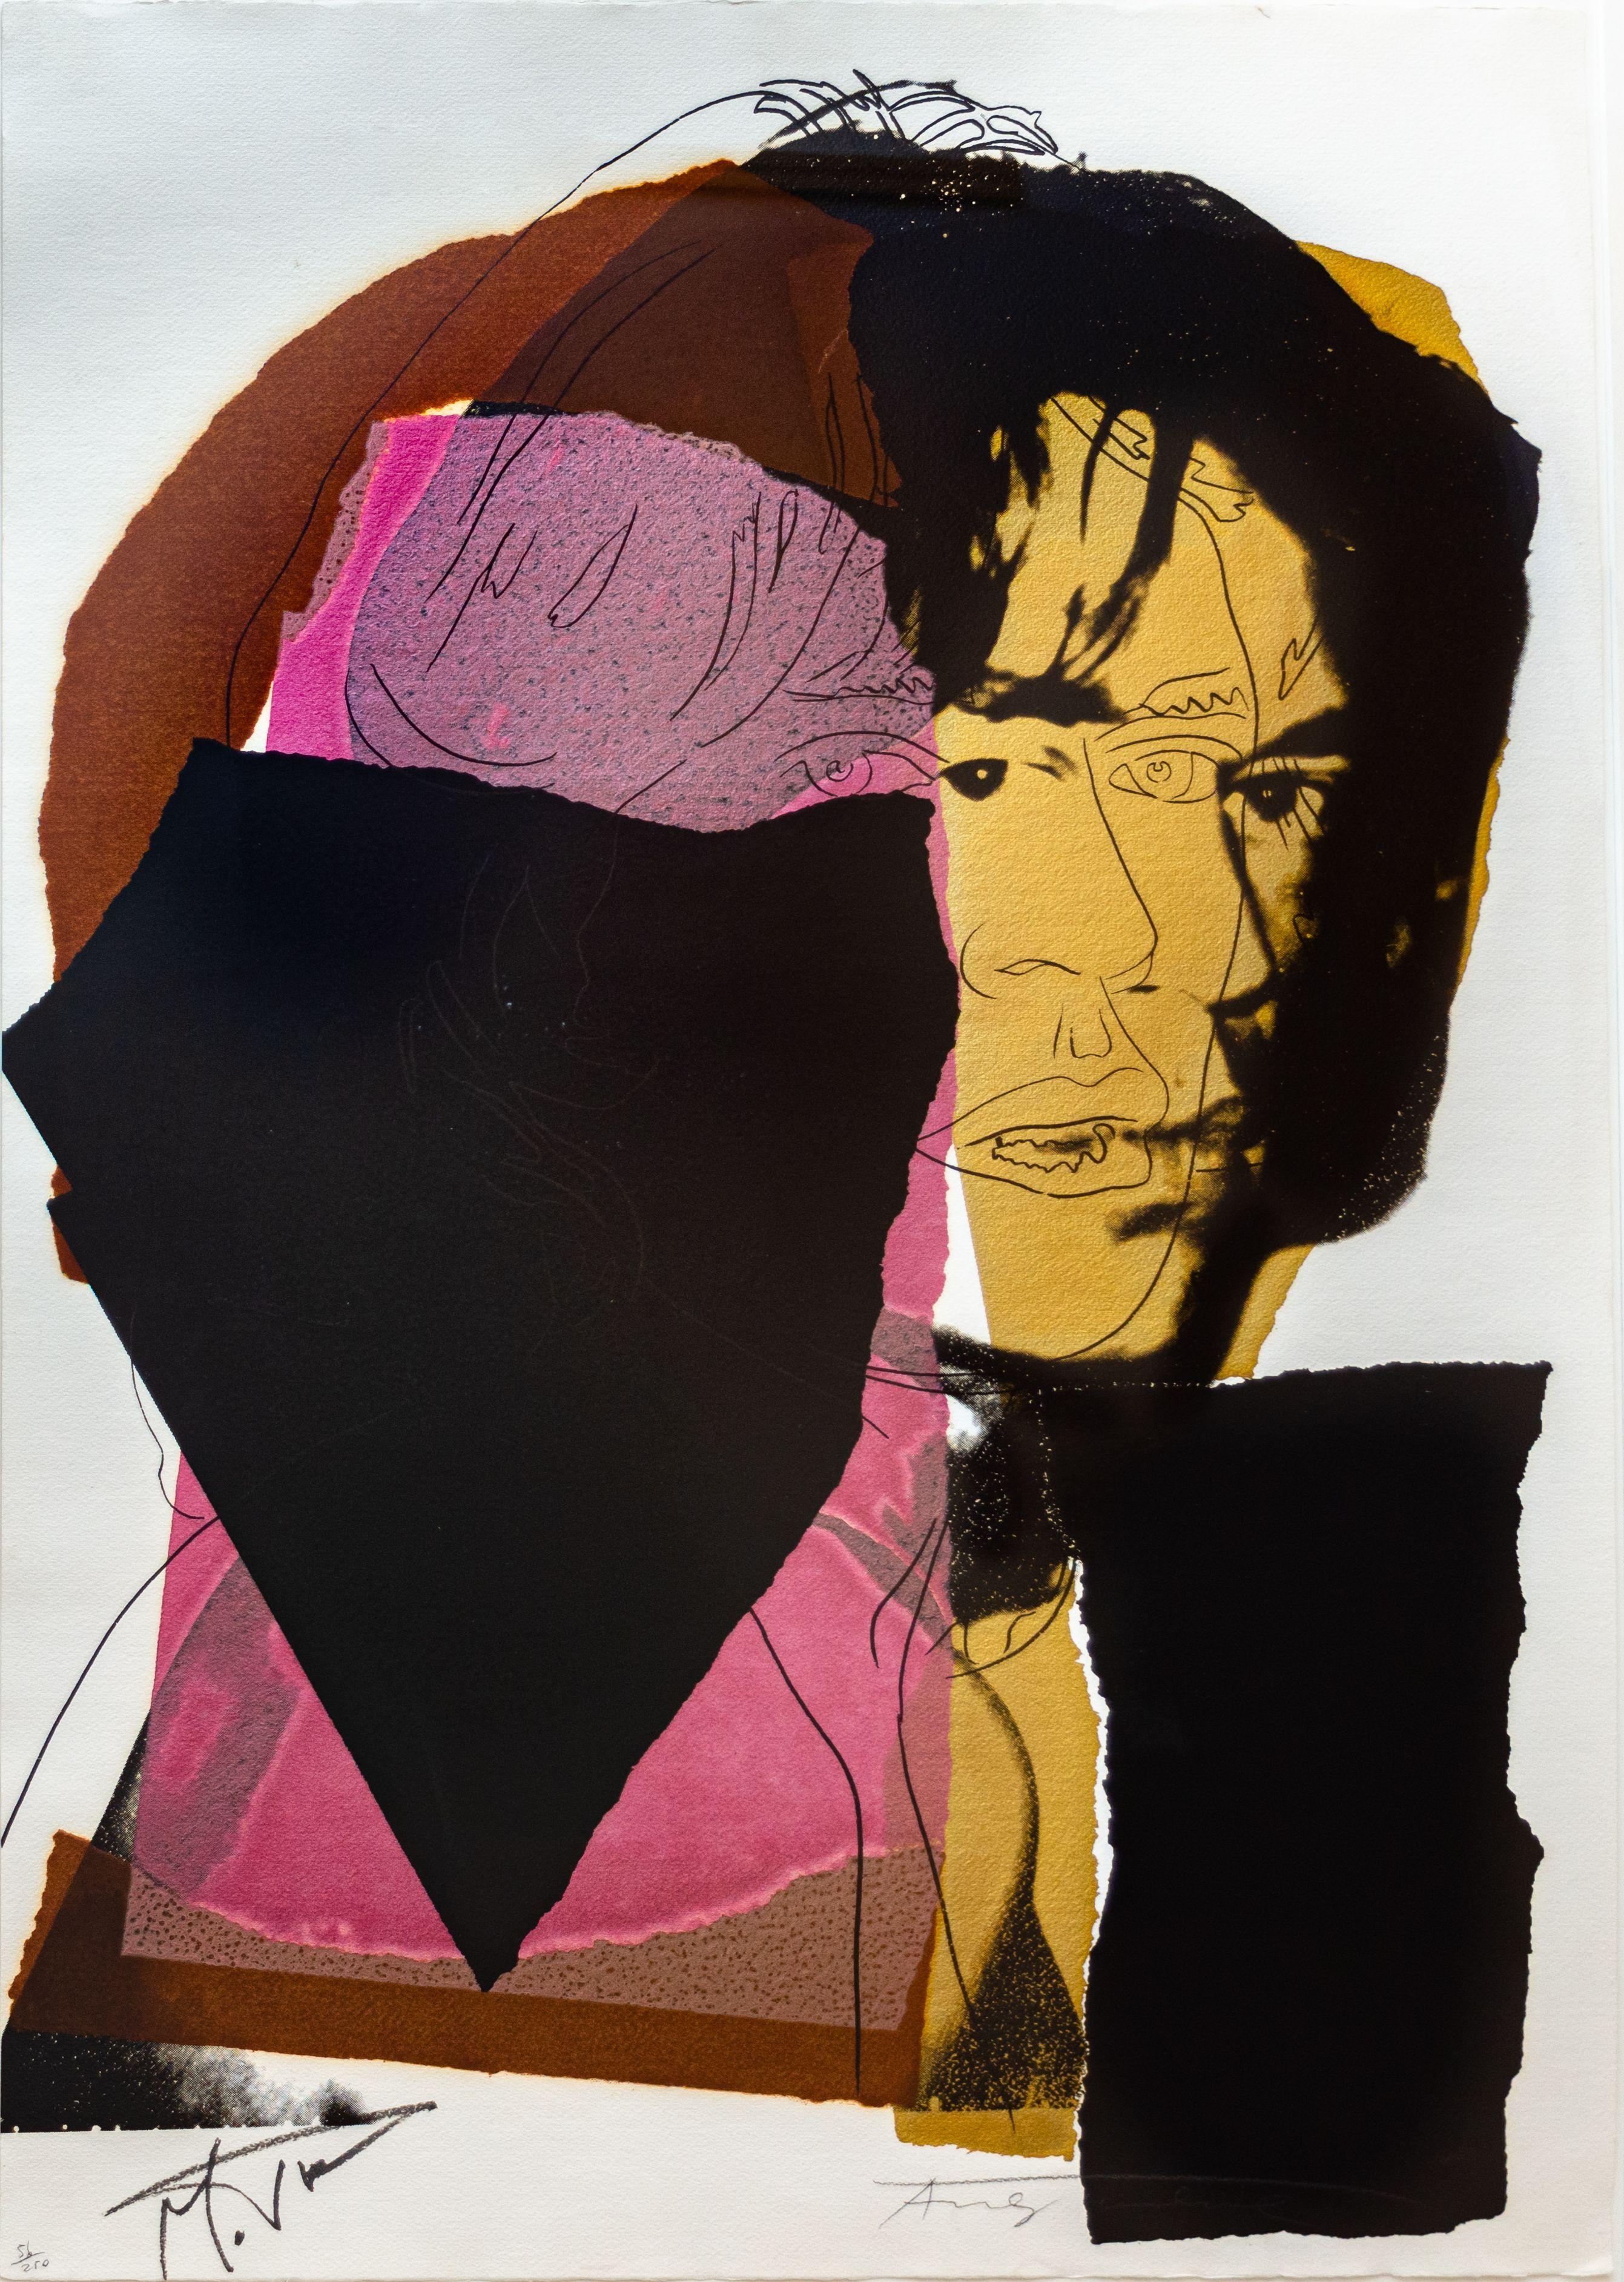 ANDY WARHOL (1928-1987)

Cette œuvre "Mick Jagger" est une sérigraphie de 1975 en couleurs sur papier Arches Aquarelle, signée et numérotée "Andy Warhol" par l'artiste au crayon et "Mick Jagger" par le modèle au stylo-feutre. Cette œuvre Edition 56